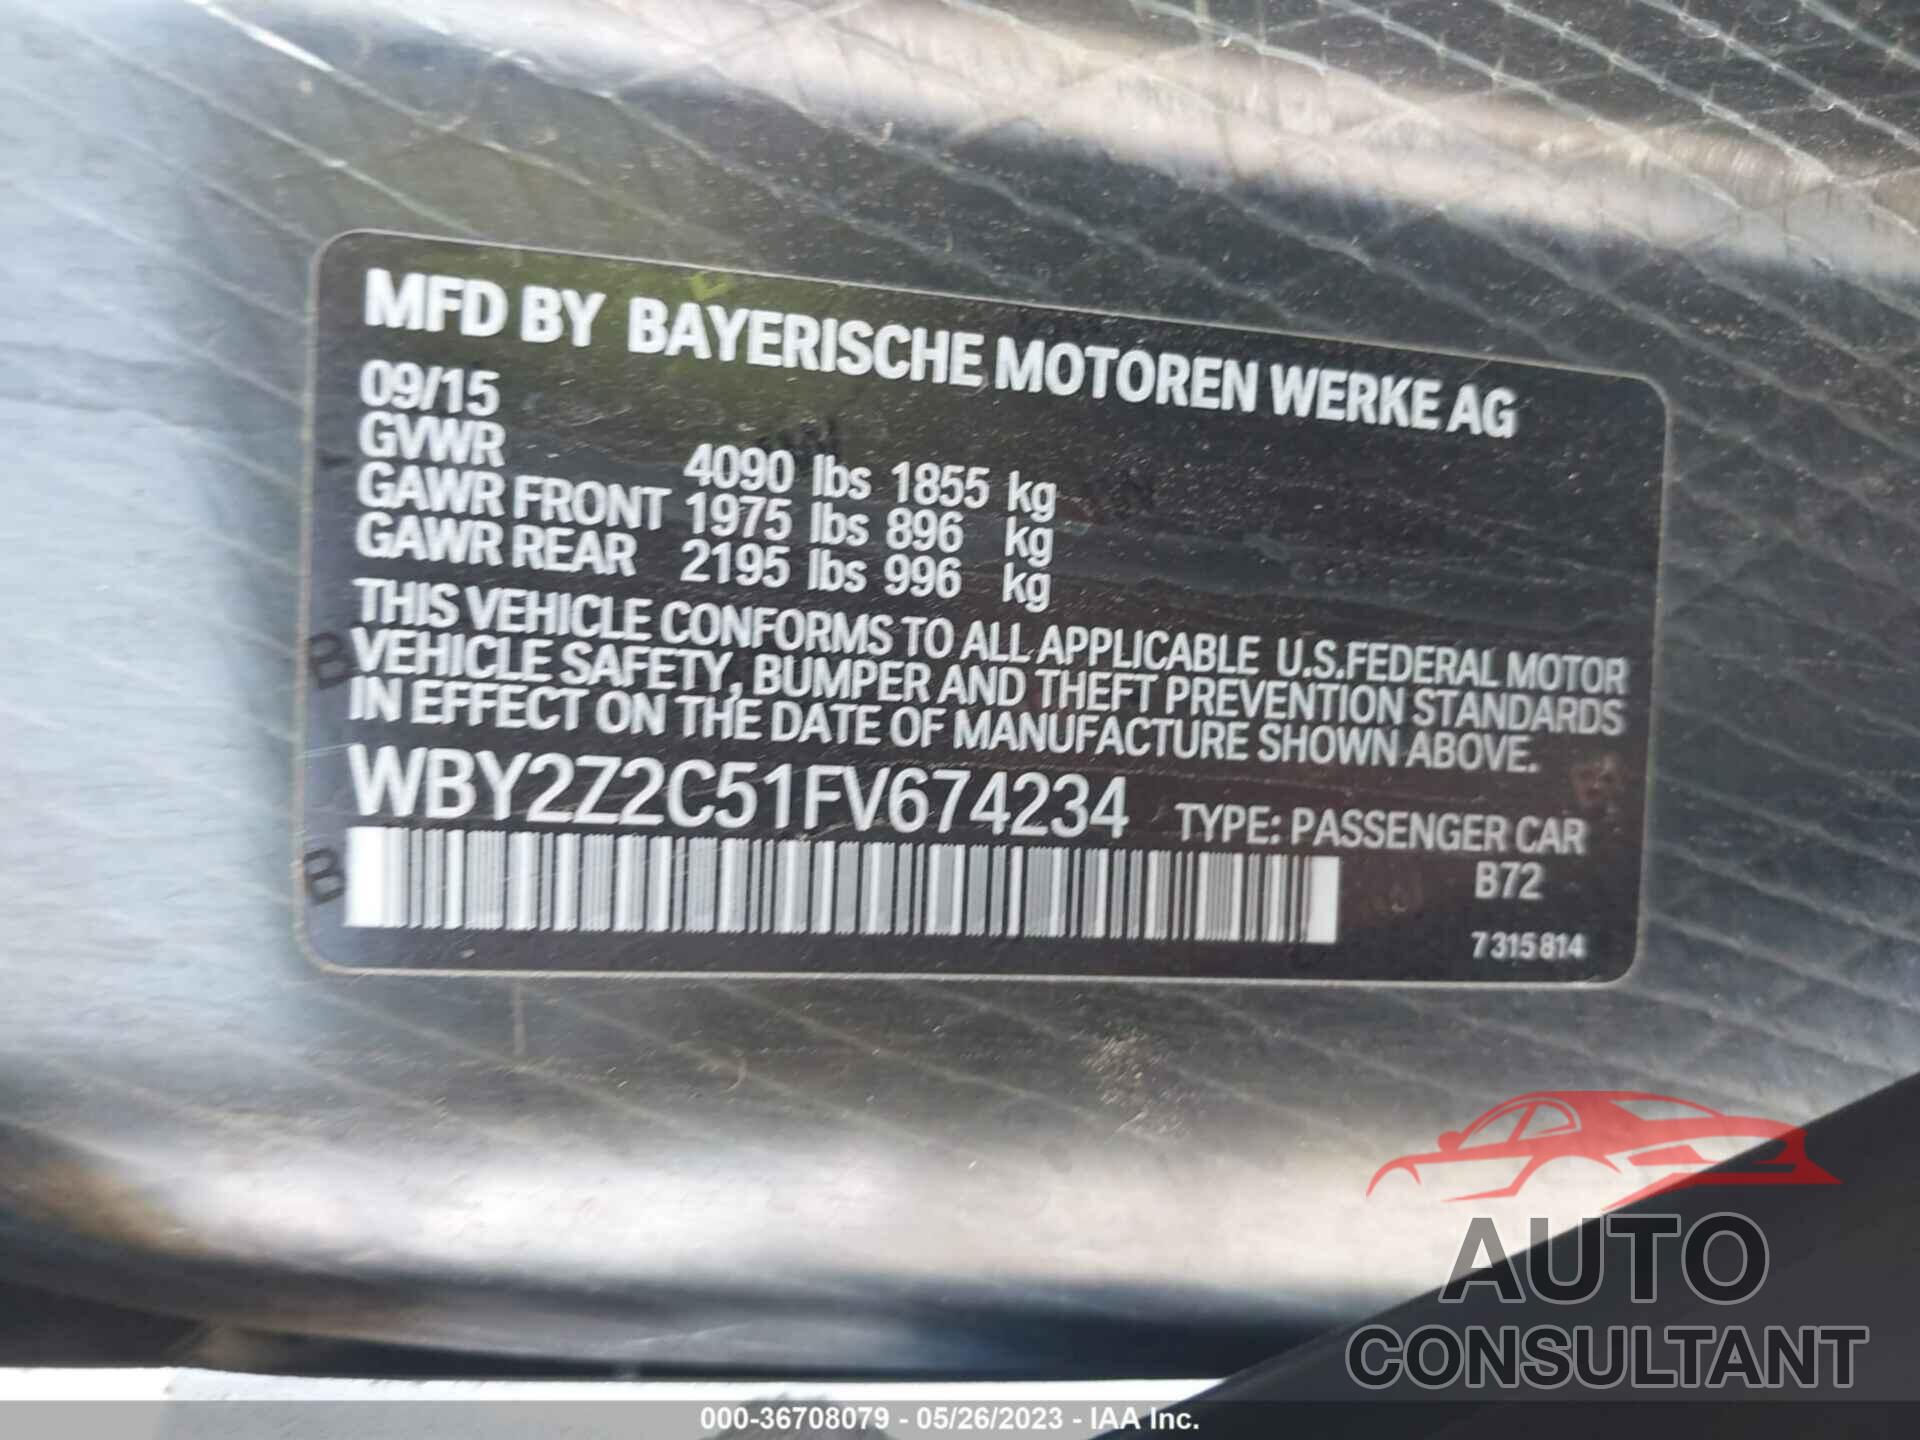 BMW I8 2015 - WBY2Z2C51FV674234